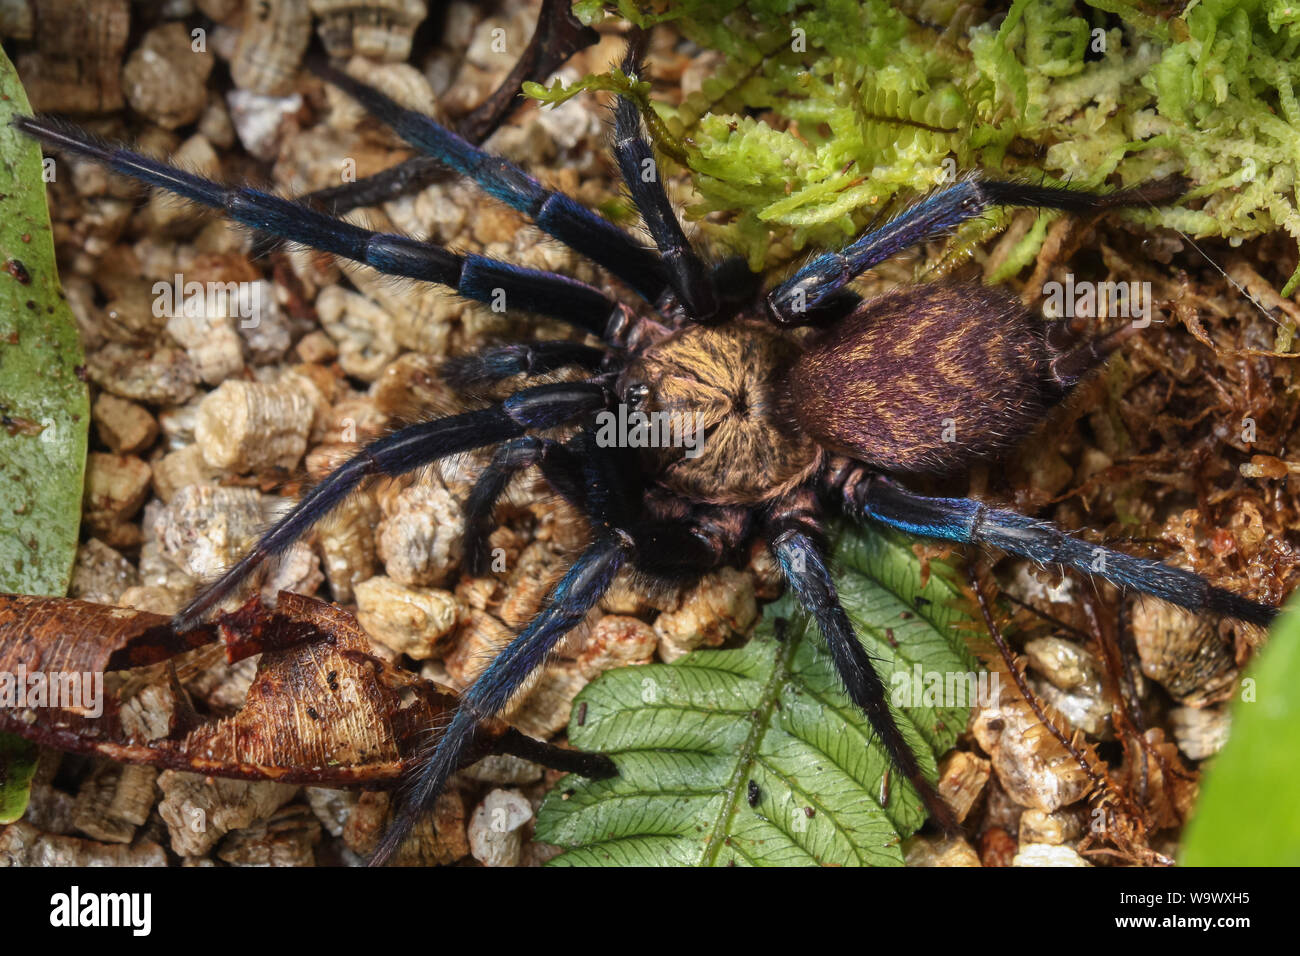 Detalles de una araña dos colas (Dipluridae) Foto de stock